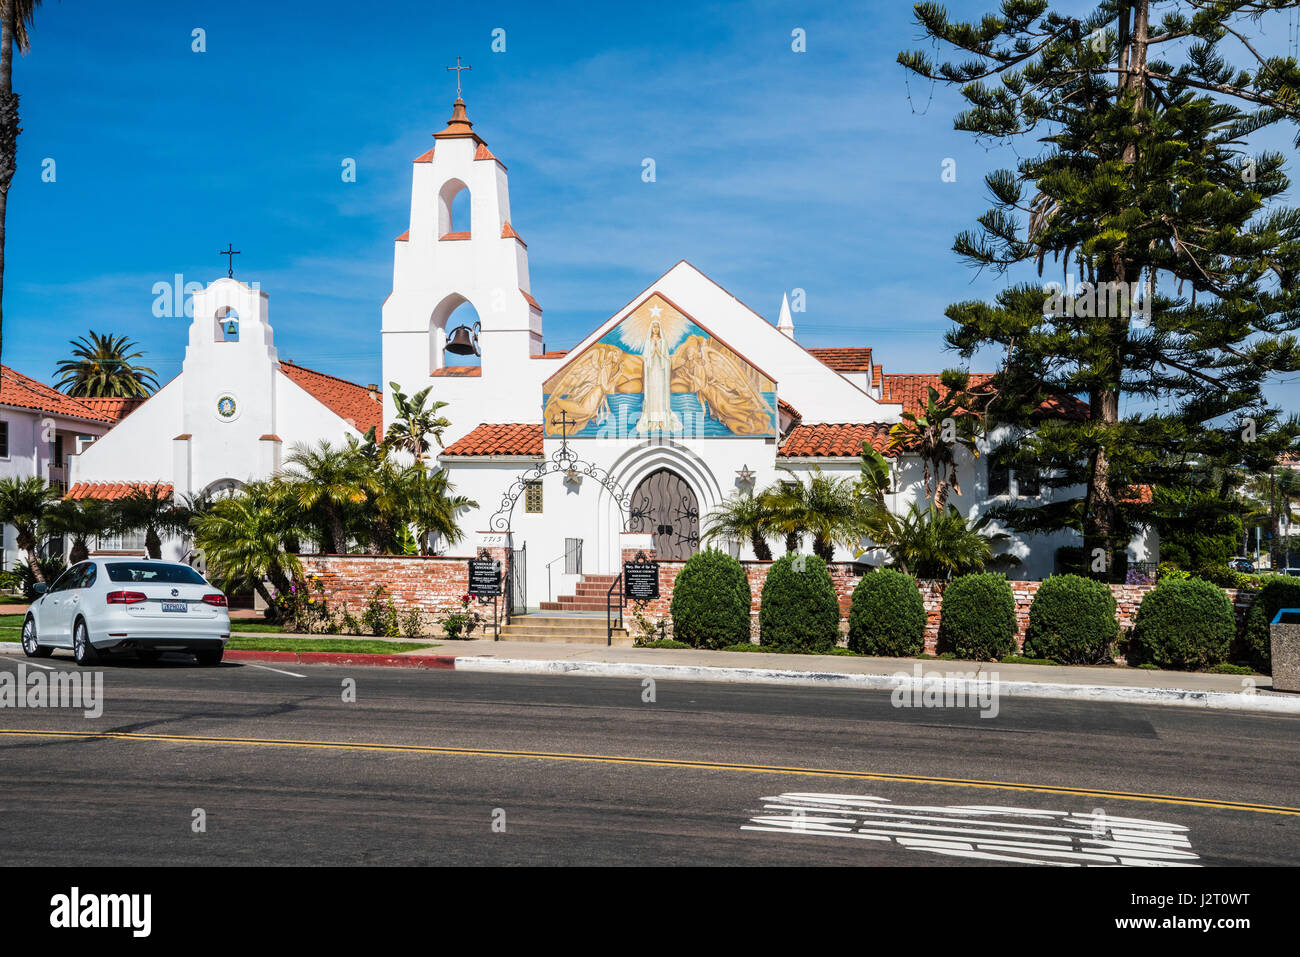 Mary Star of the Sea Catholic Church in La Jolla California Stock Photo